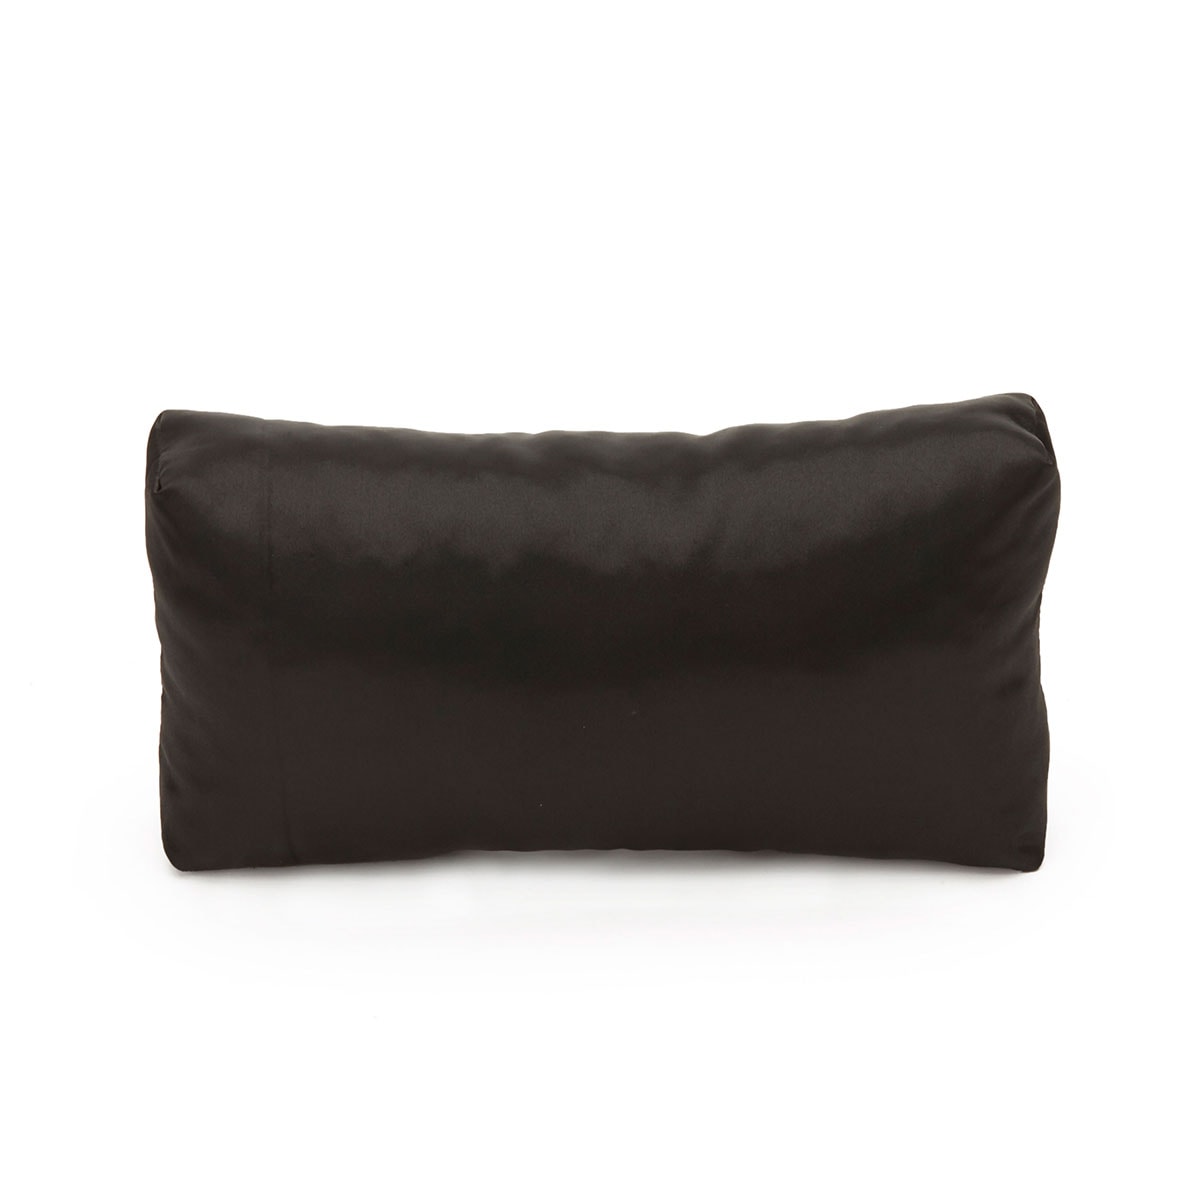 Classic Flap Bag Pillow / Premium Velvet Purse Storage Pillow 